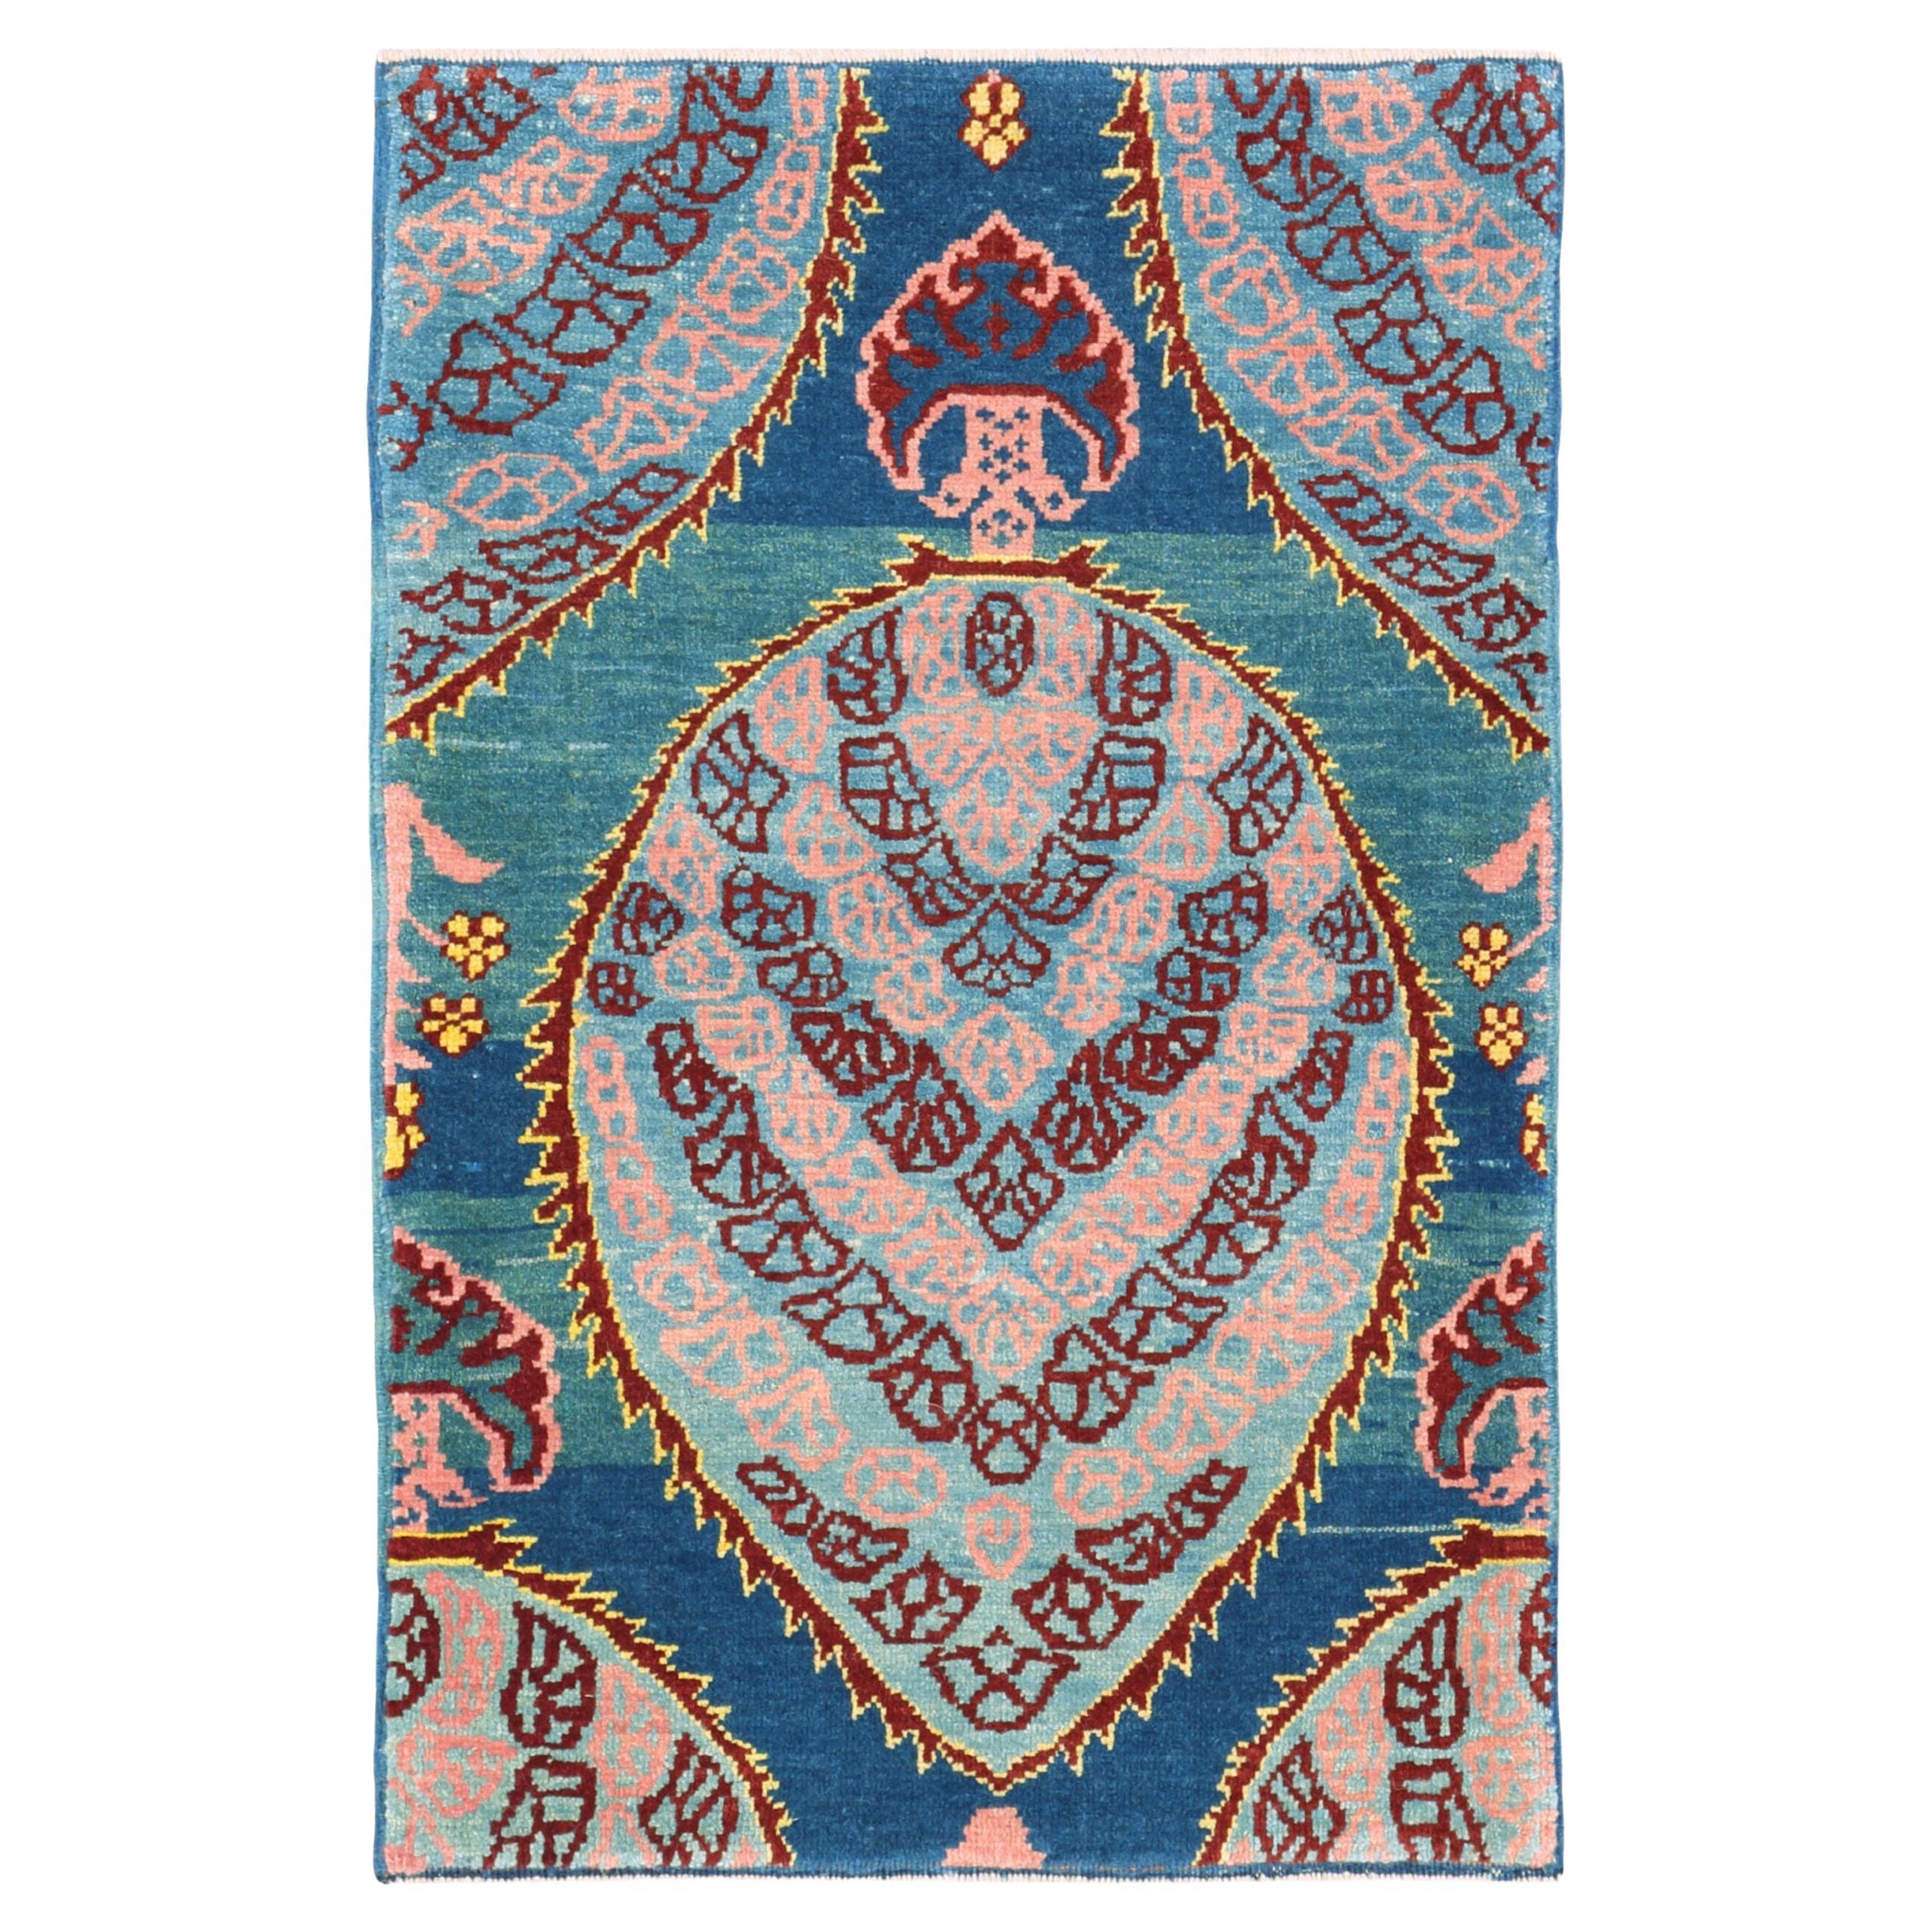 Ararat Rugs Gerous Bidjar Wagireh Pendant Rug Revival Carpet Natural Dyed For Sale